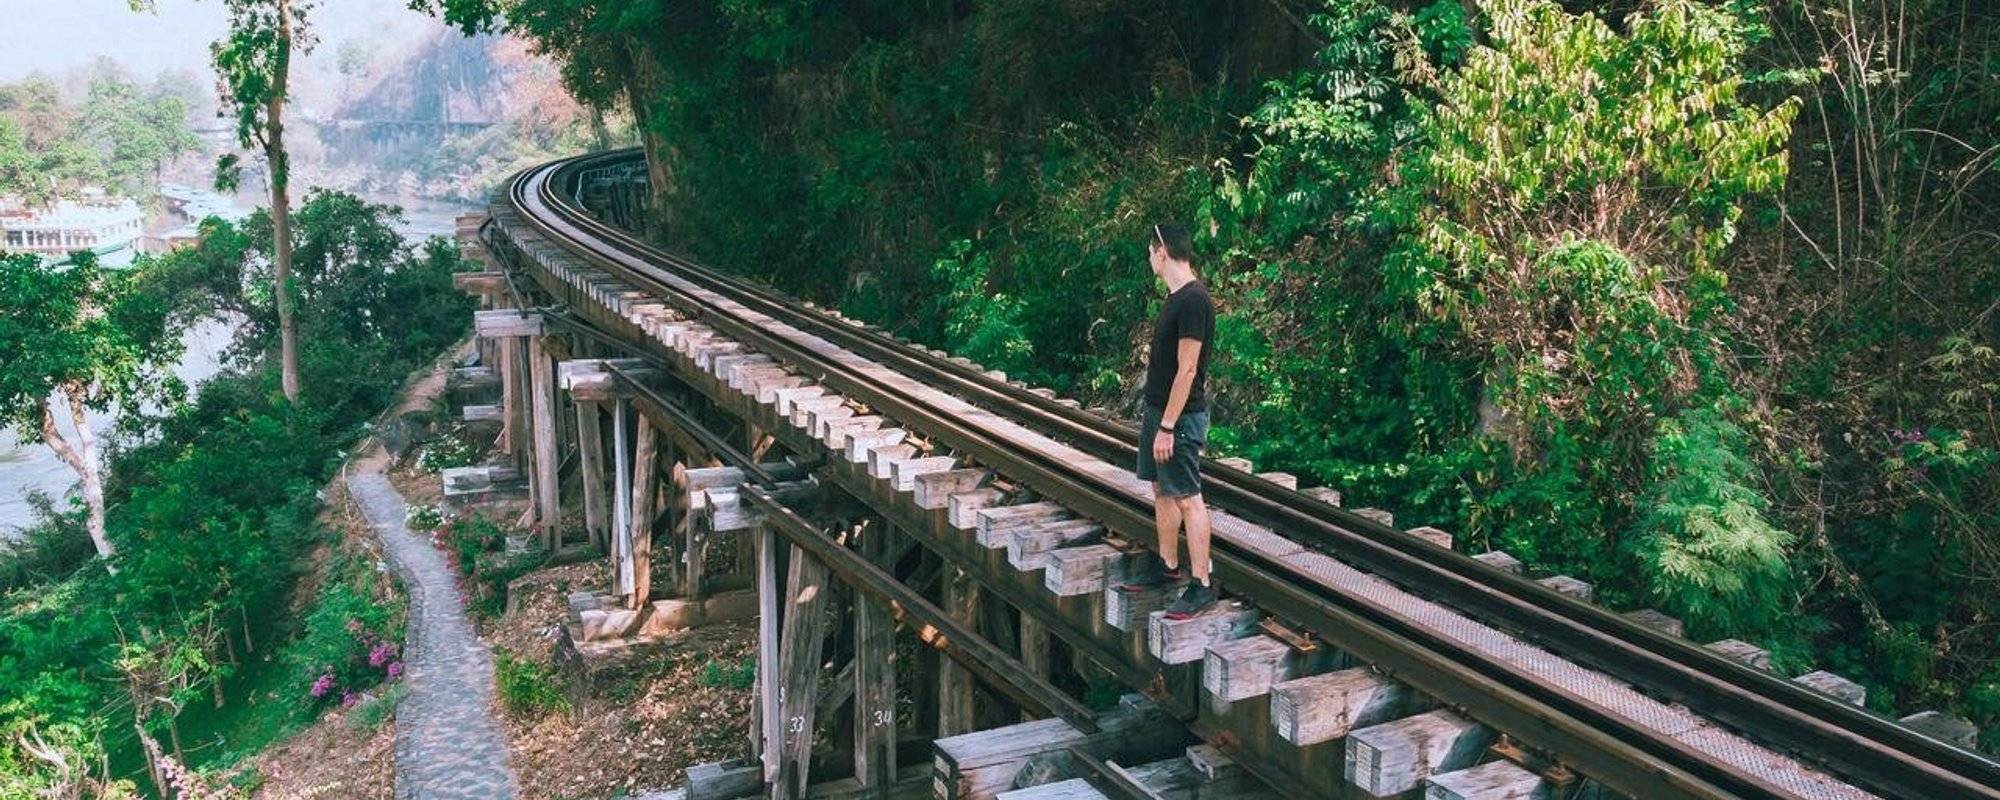 The Death Railway with Mystery girl [Day 3] - Kanchanaburi, Thailand